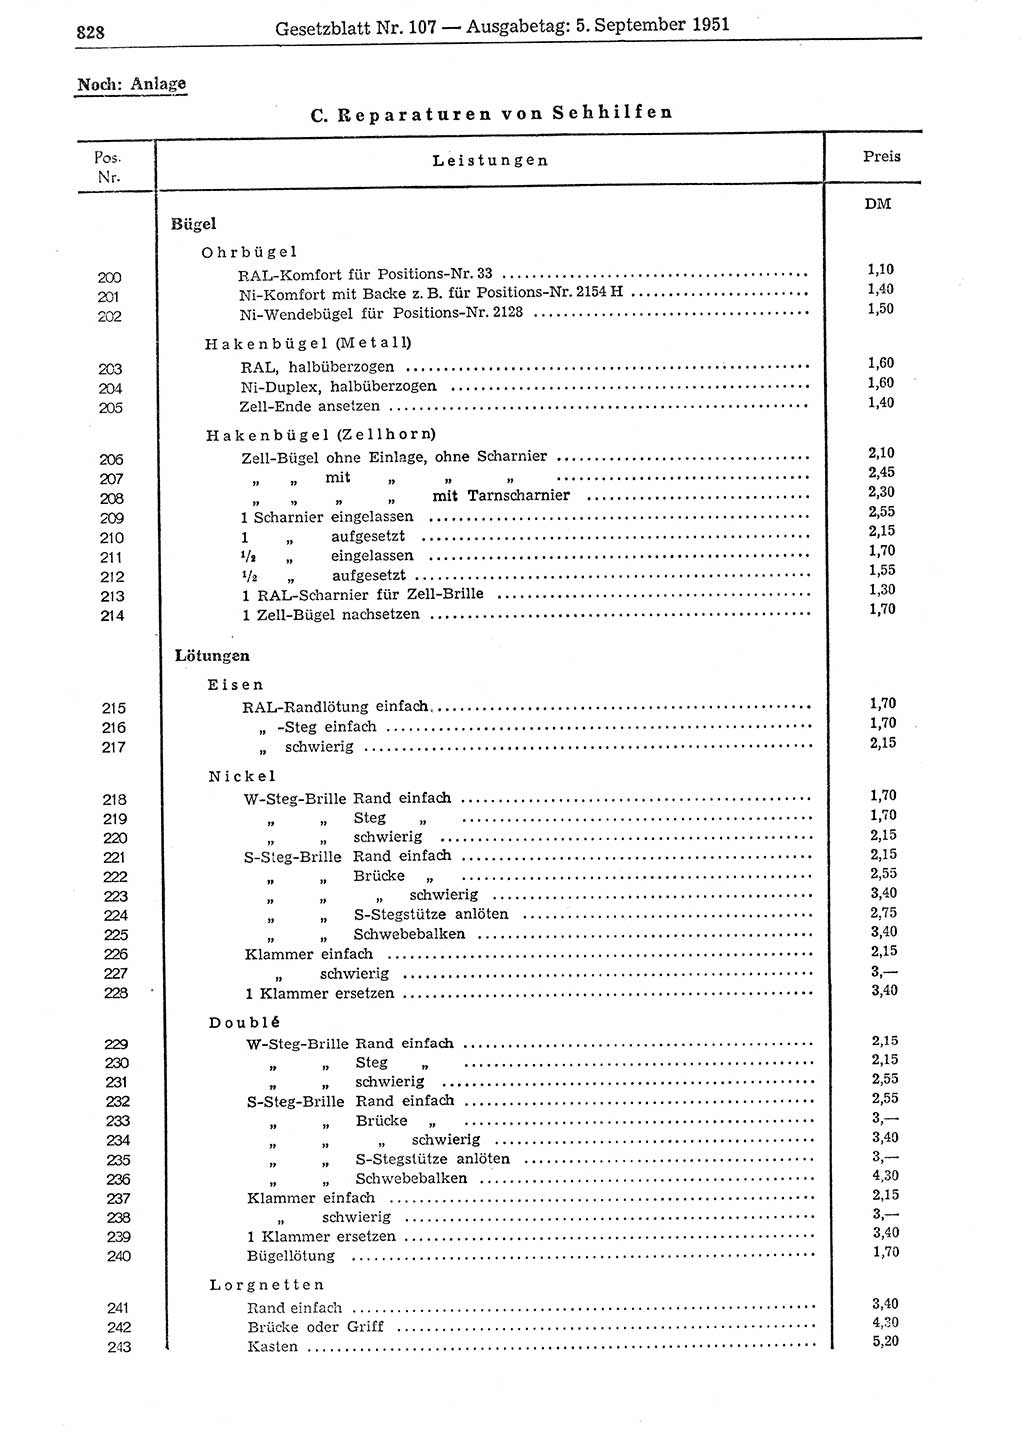 Gesetzblatt (GBl.) der Deutschen Demokratischen Republik (DDR) 1951, Seite 828 (GBl. DDR 1951, S. 828)